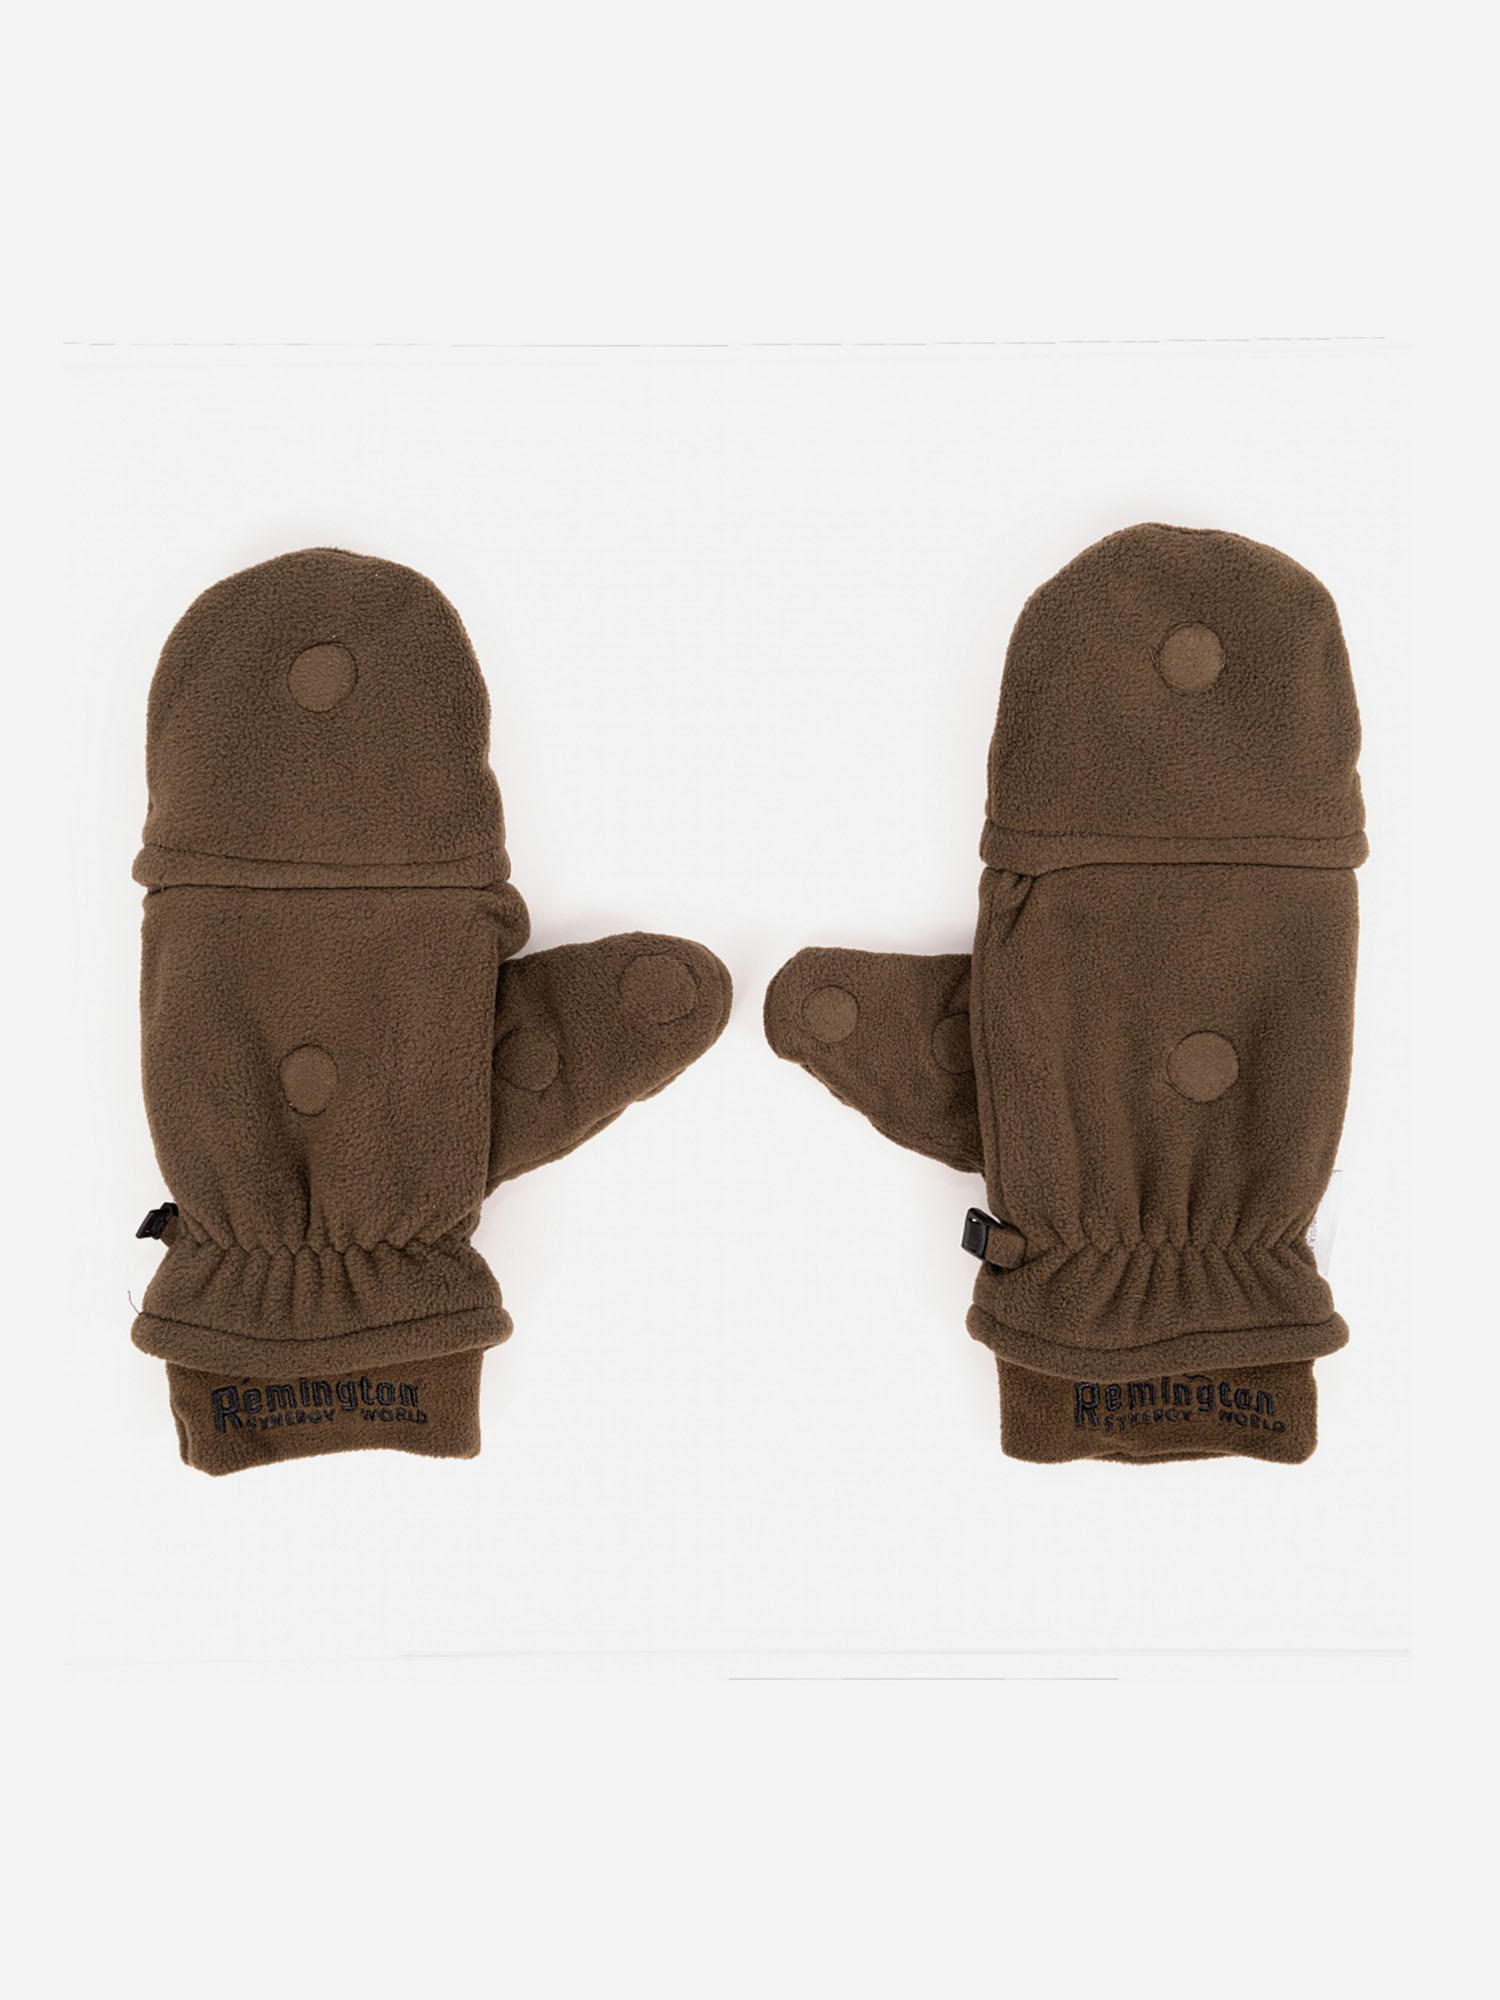 Перчатки Remington Тoeless brown, Коричневый перчатки тренировочные everlast 1910 classic 14oz p00002505 brown